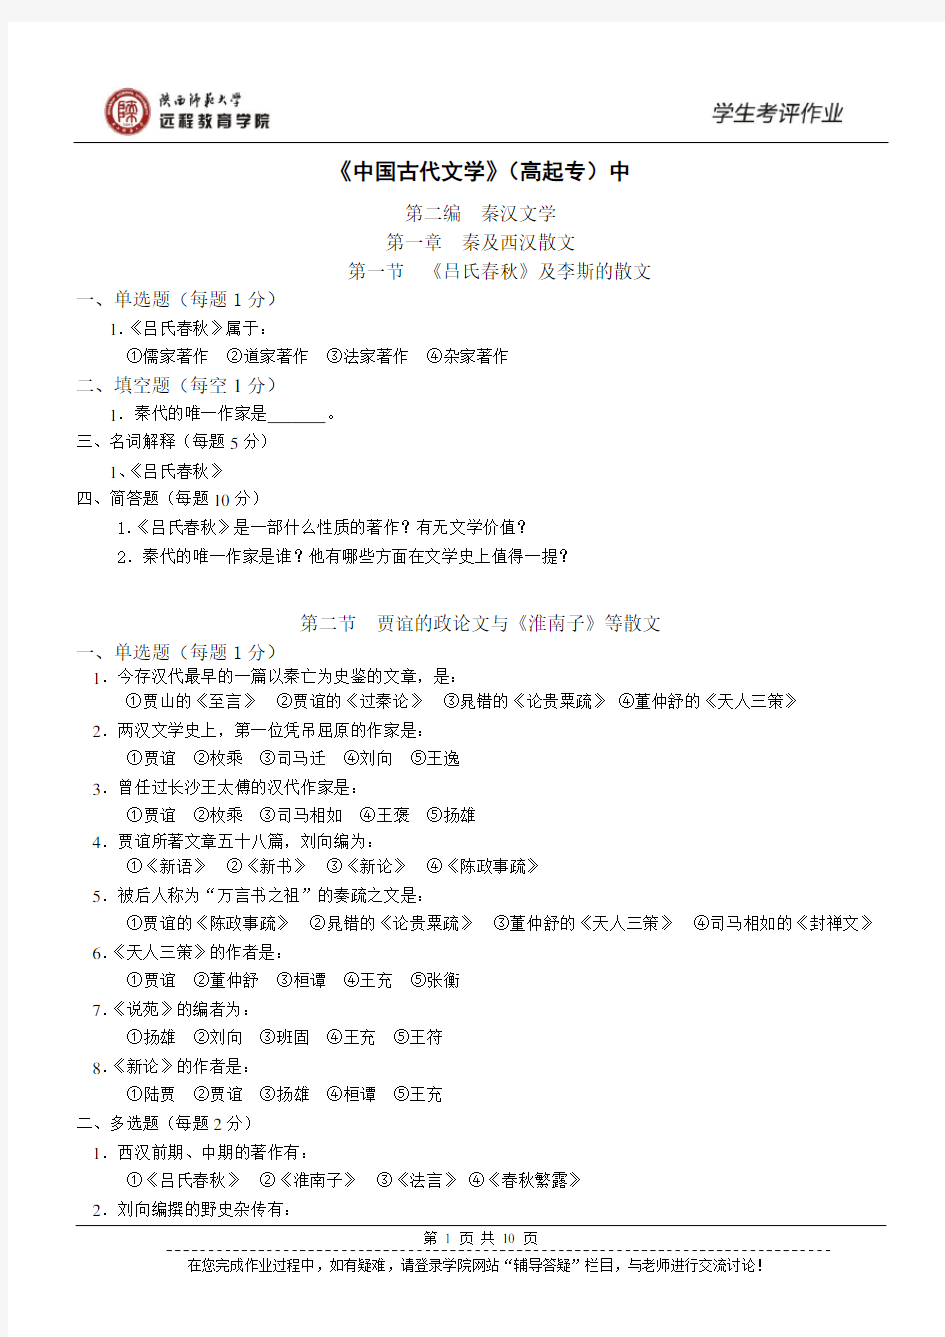 Y225-高起专-汉语-《中国古代文学(一)》中作业